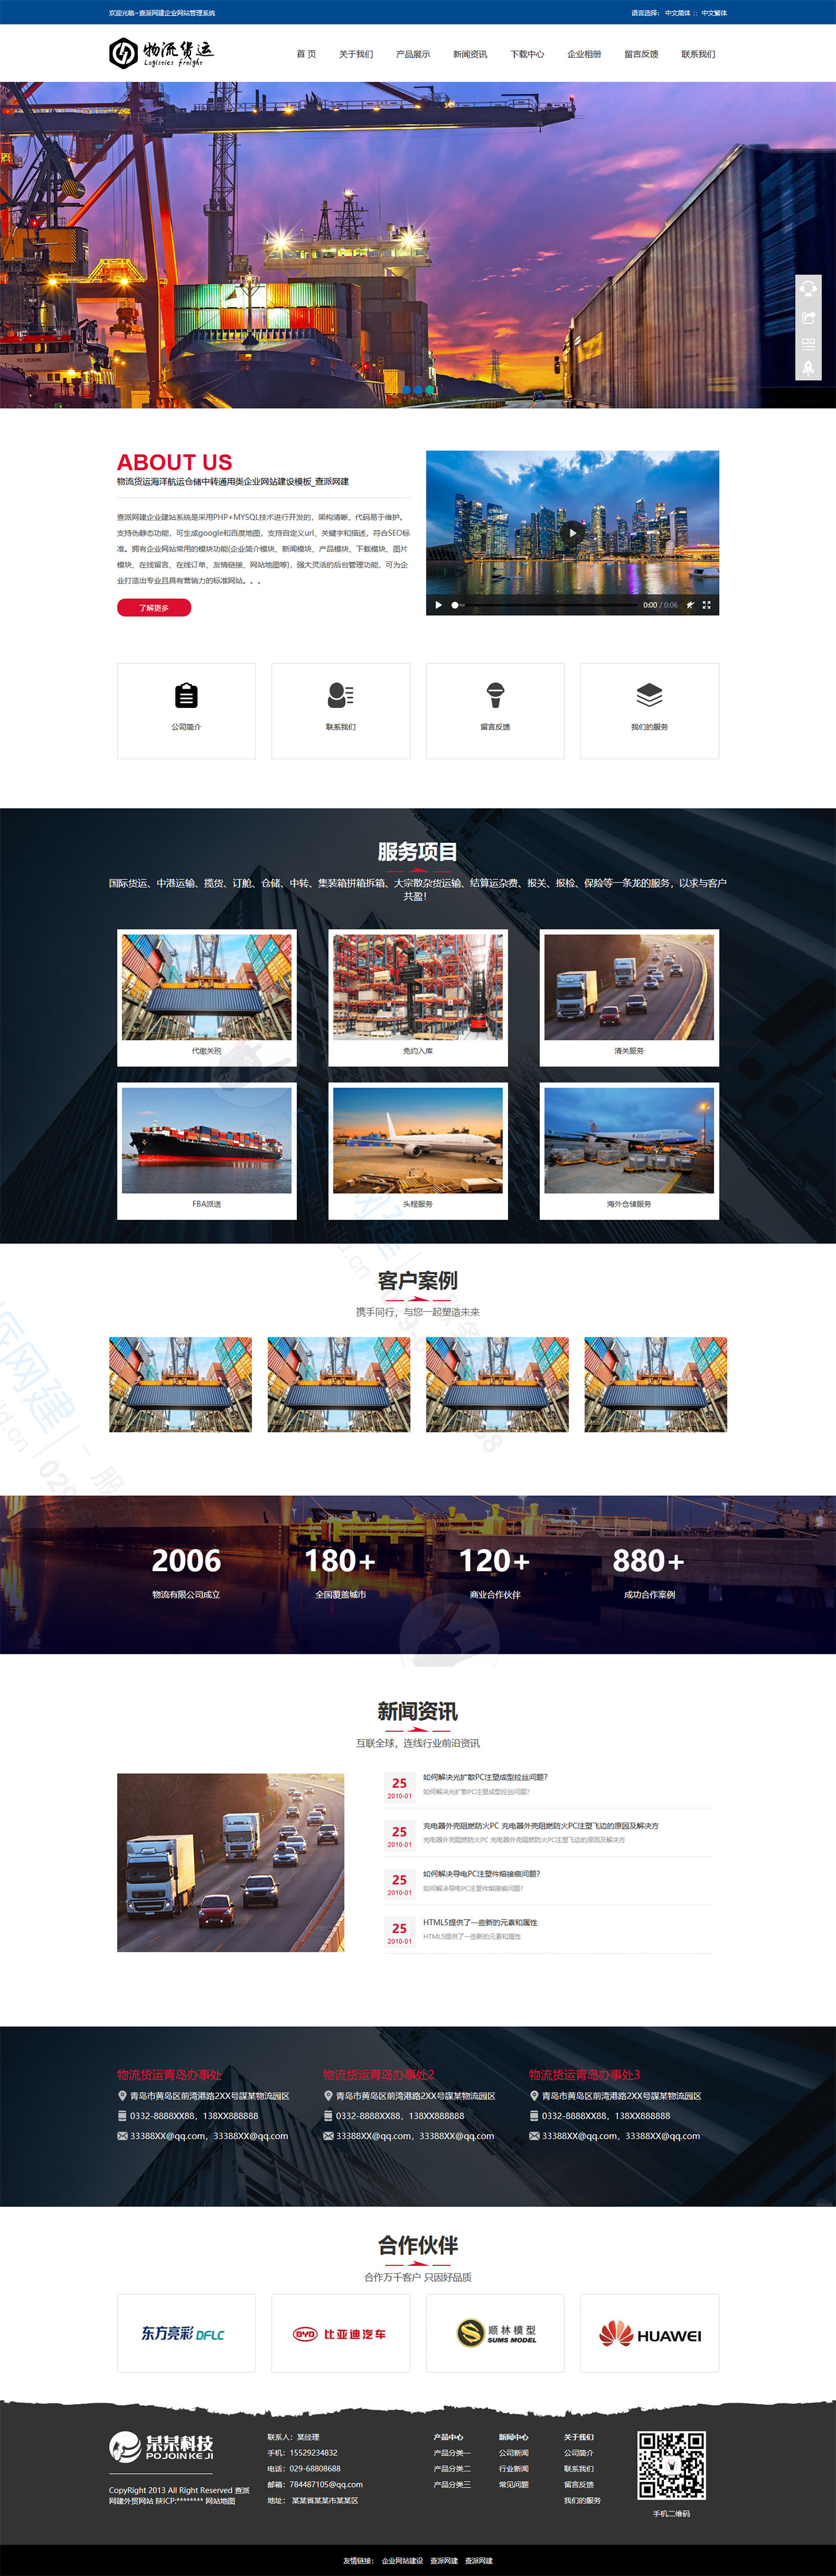 物流货运海洋航运仓储中转通用类企业网站建设模板